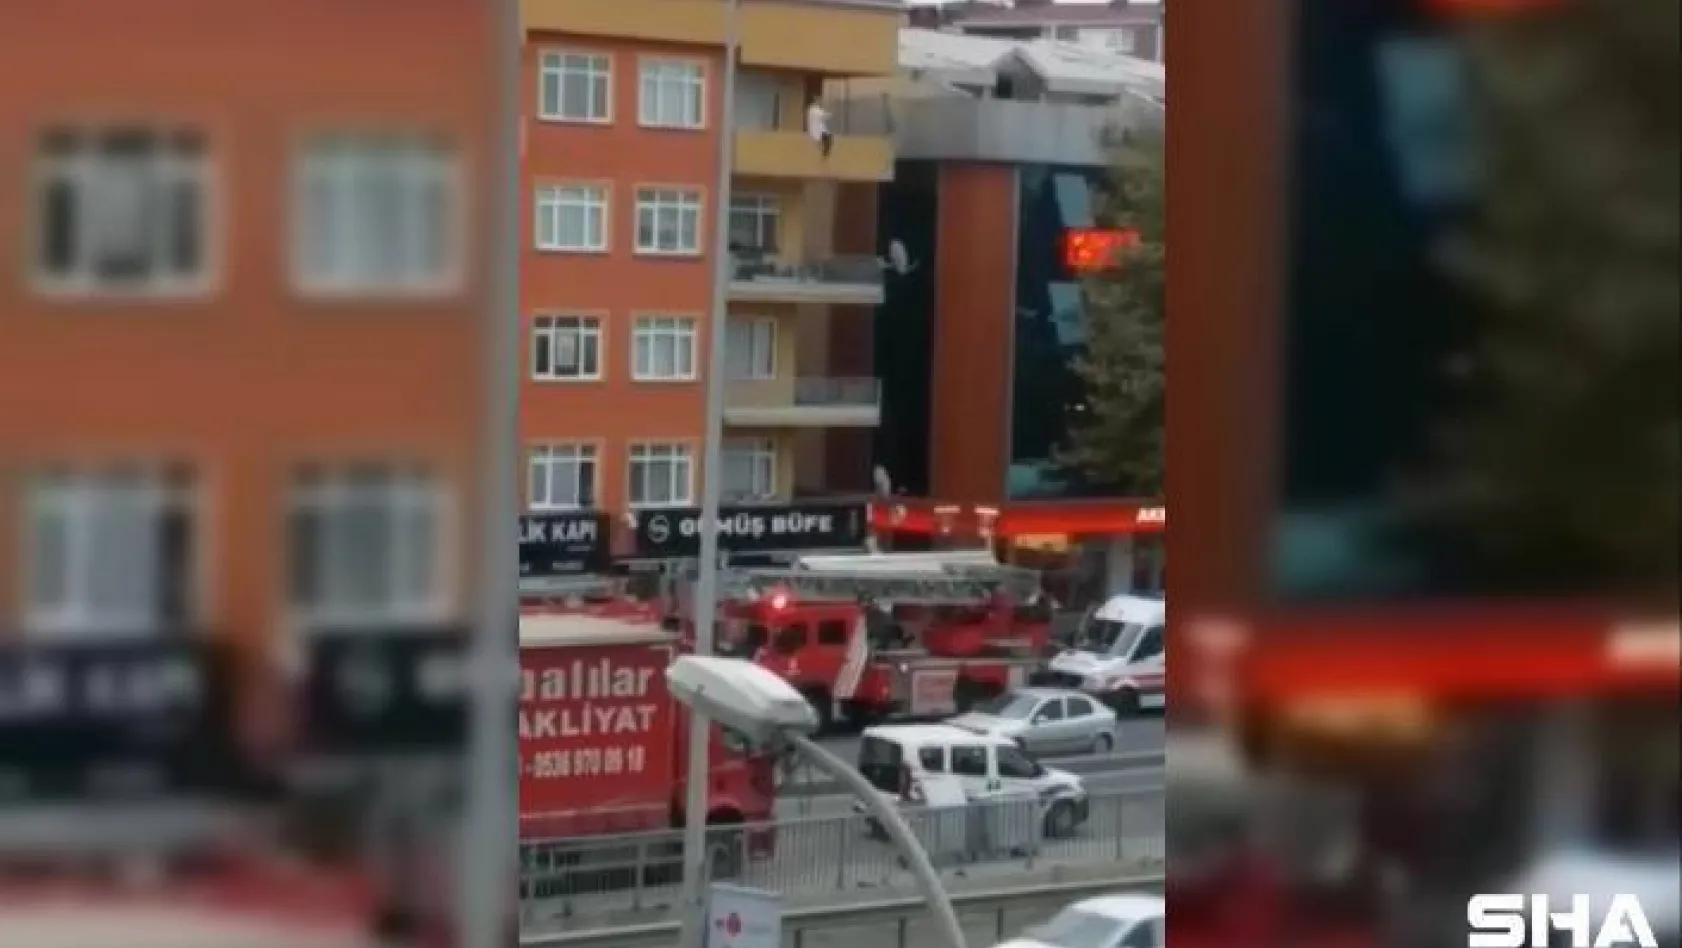 (Özel) Polisin intihar etmek için balkona çıkan kadını kurtardığı anlar kamerada